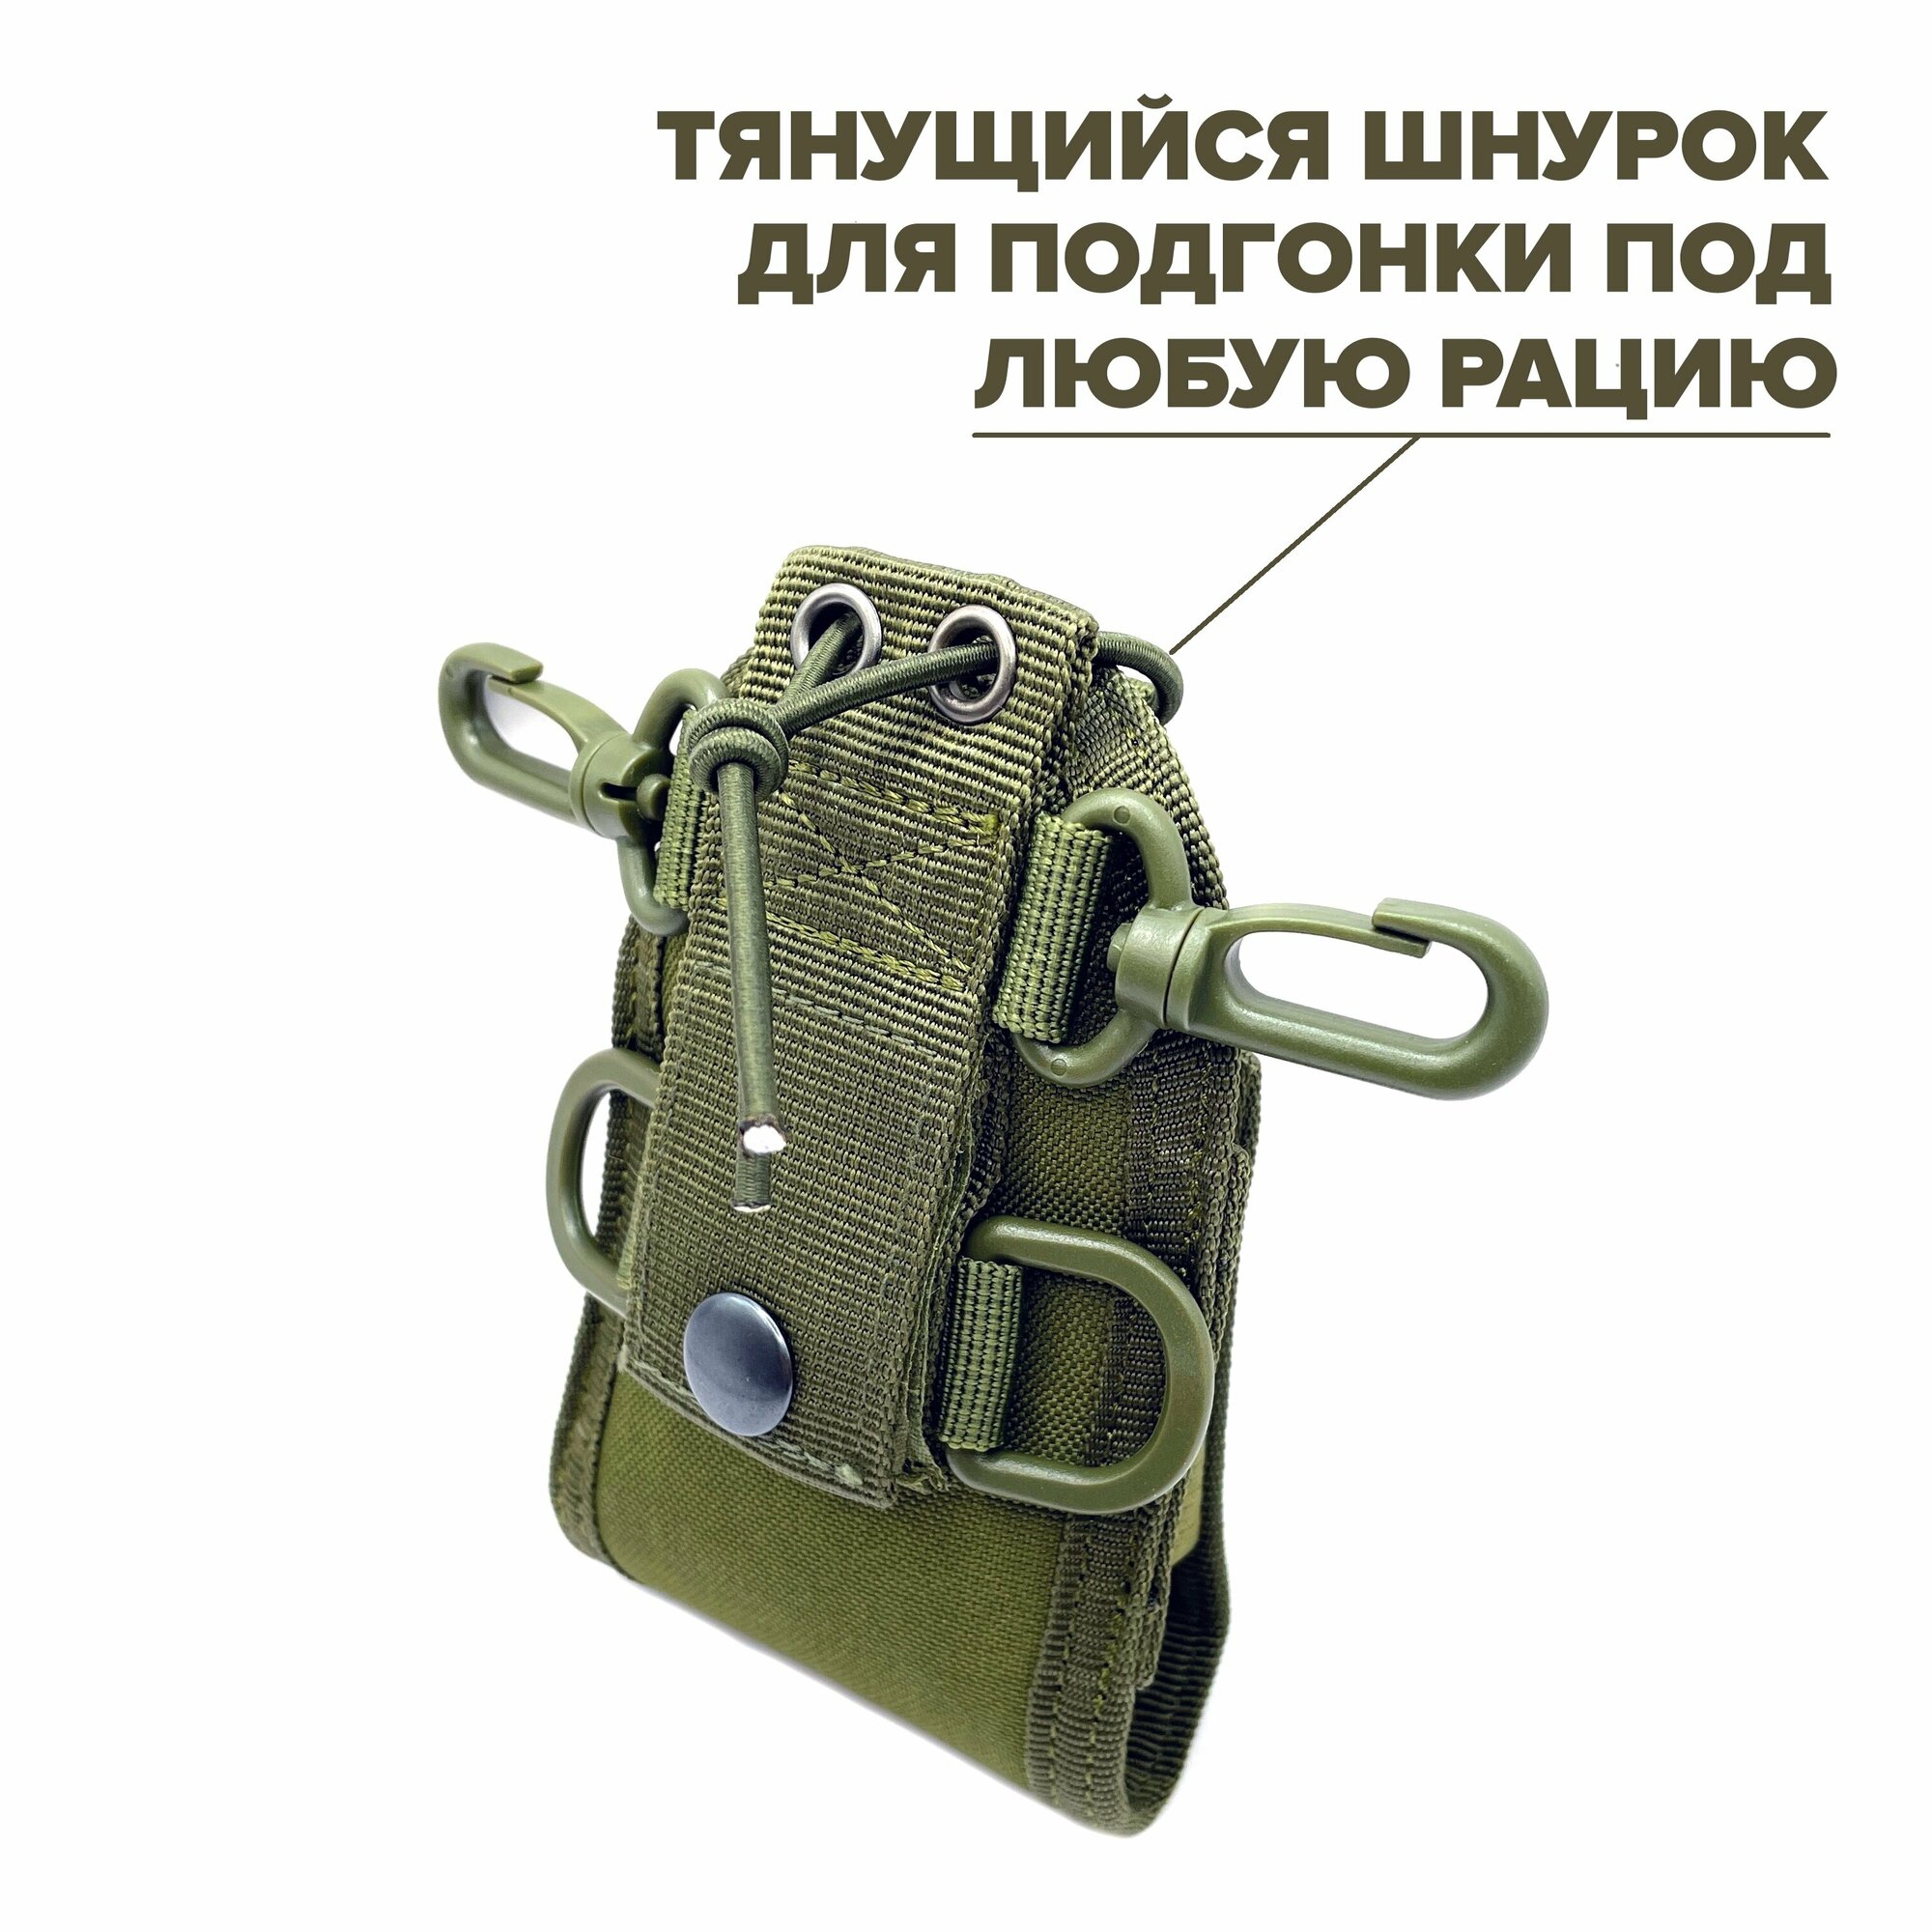 Сумка чехол для рации на MOLLE, Baofeng, универсальный подсумок для радиостанции на грудь, плечо, ремень, рюкзак, зеленый Army Green тип Е